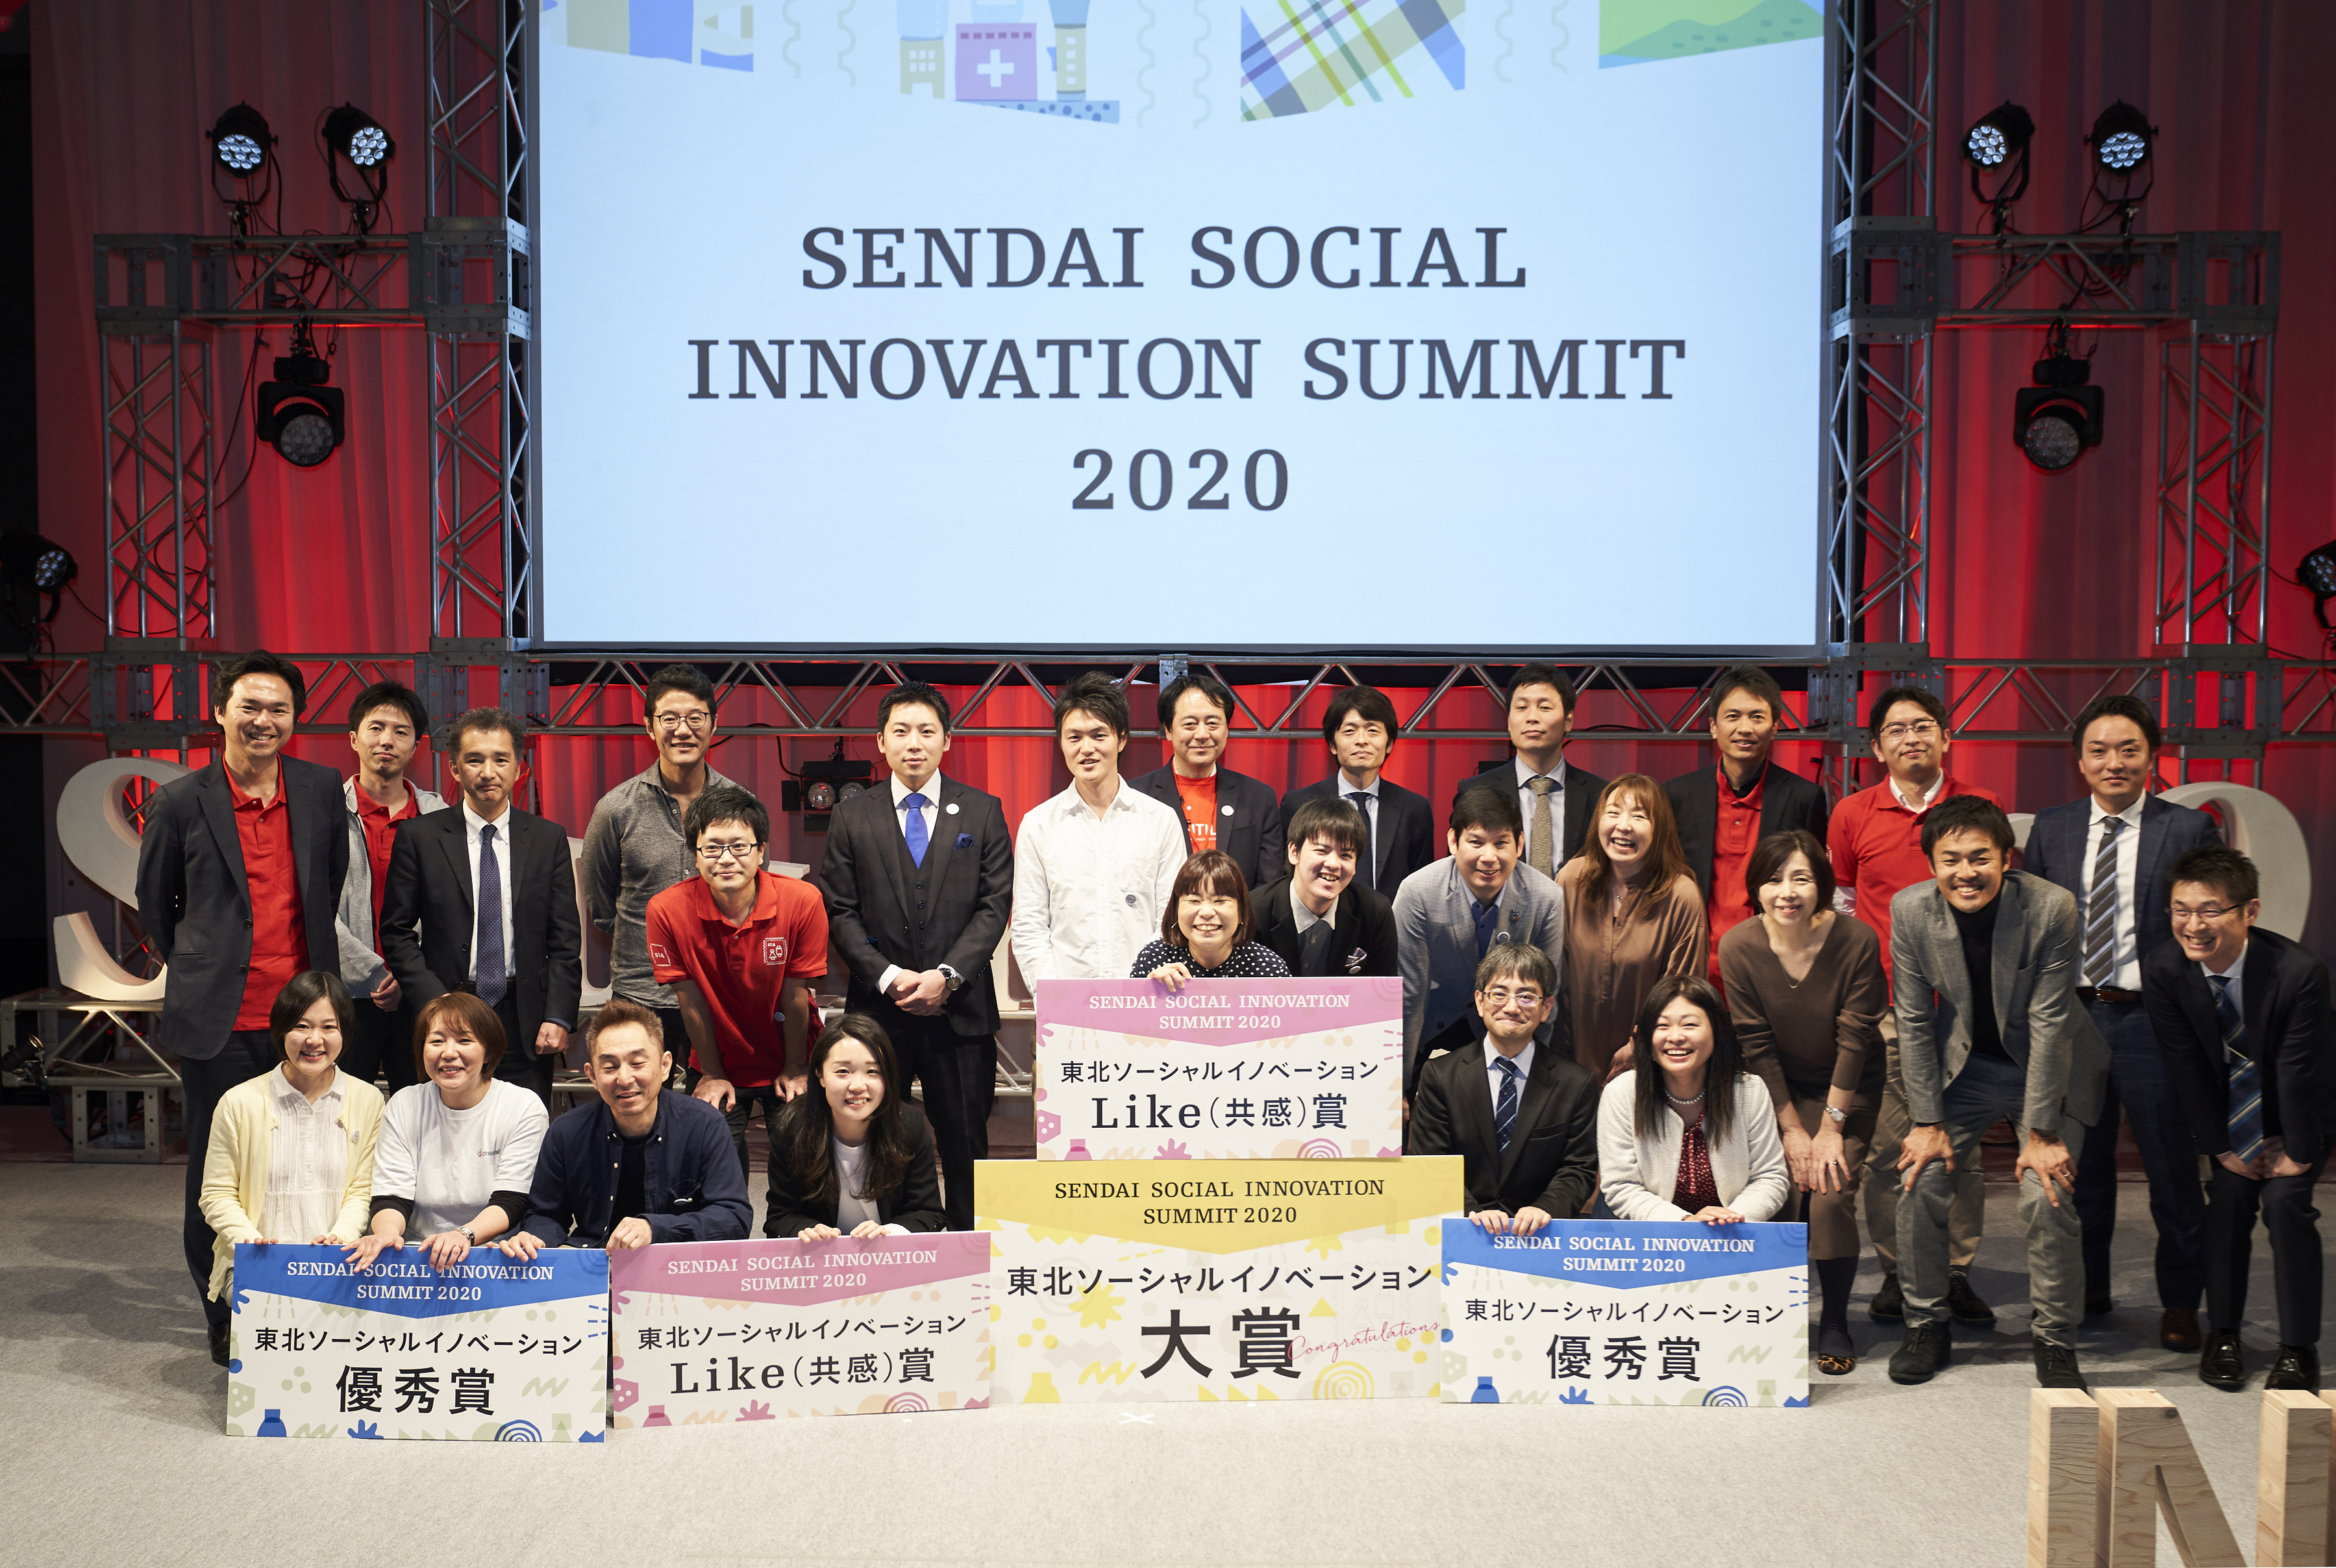 【イベントレポート】 「SENDAI SOCIAL INNOVATION SUMMIT 2020」